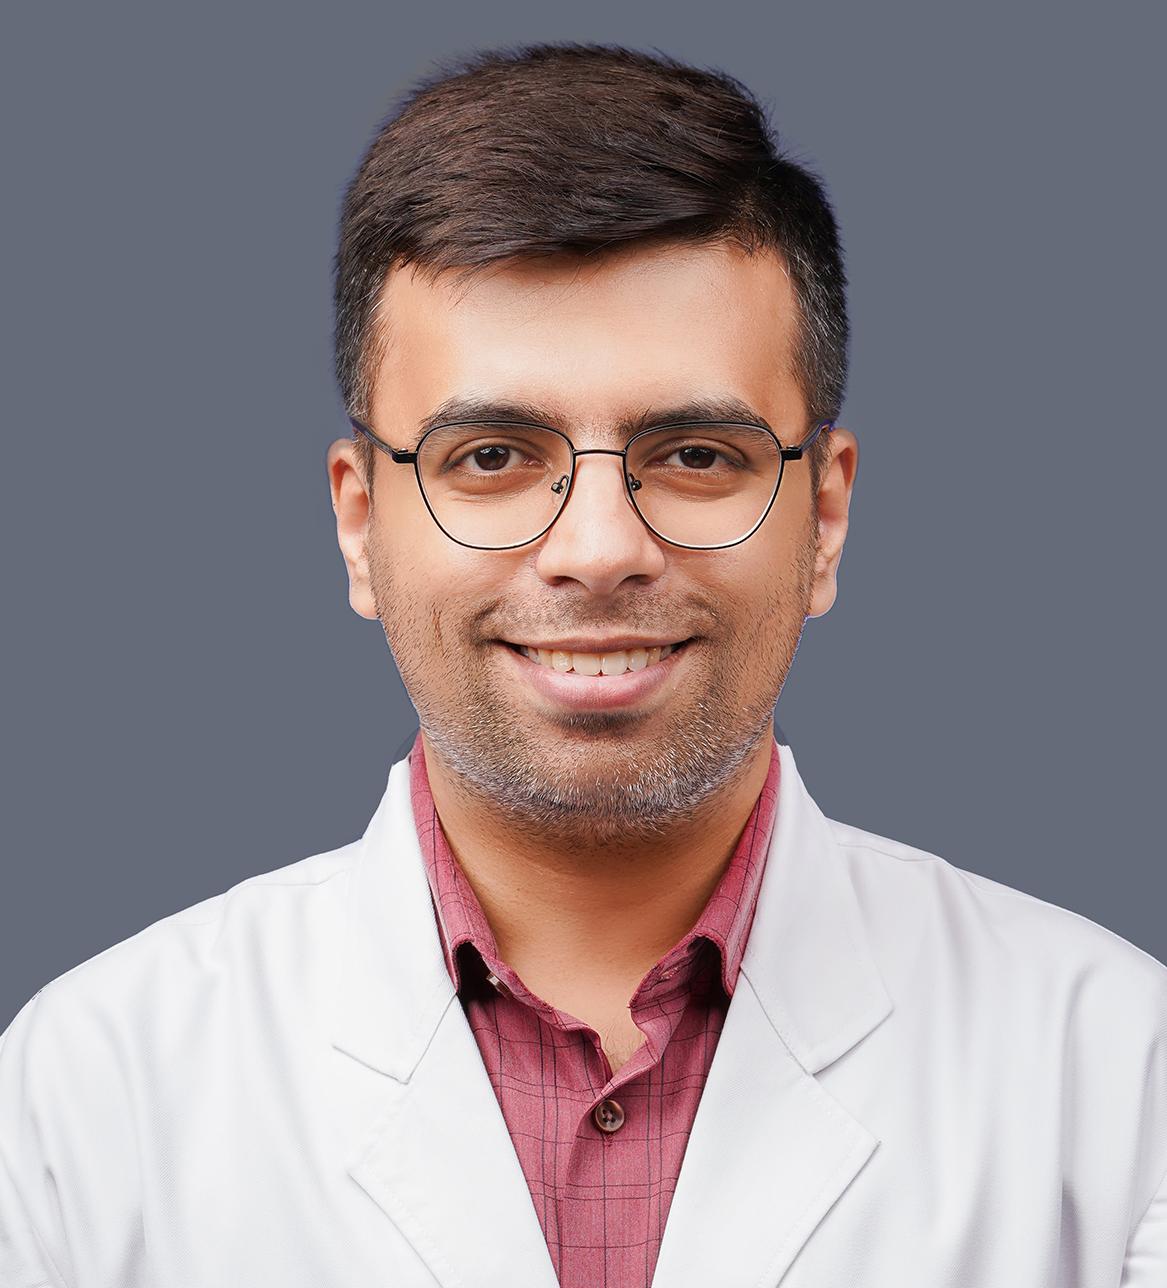 Dr. Rohit Mehtani